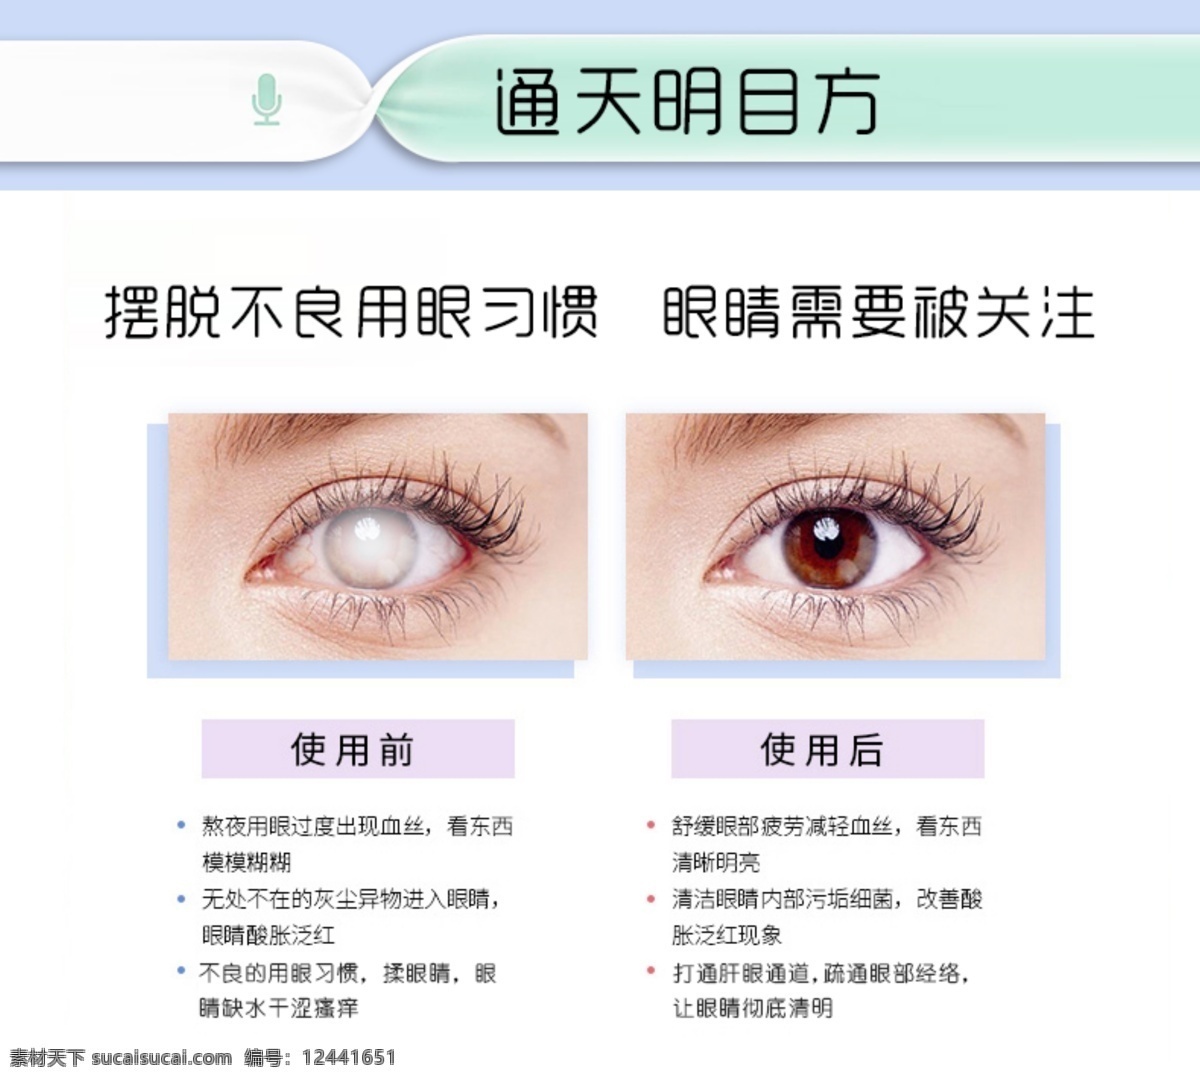 眼睛疾病 明亮你的双眸 眼疾 眼病 眼病素材 中医治疗眼疾 引起眼疾原因 活动基础物料